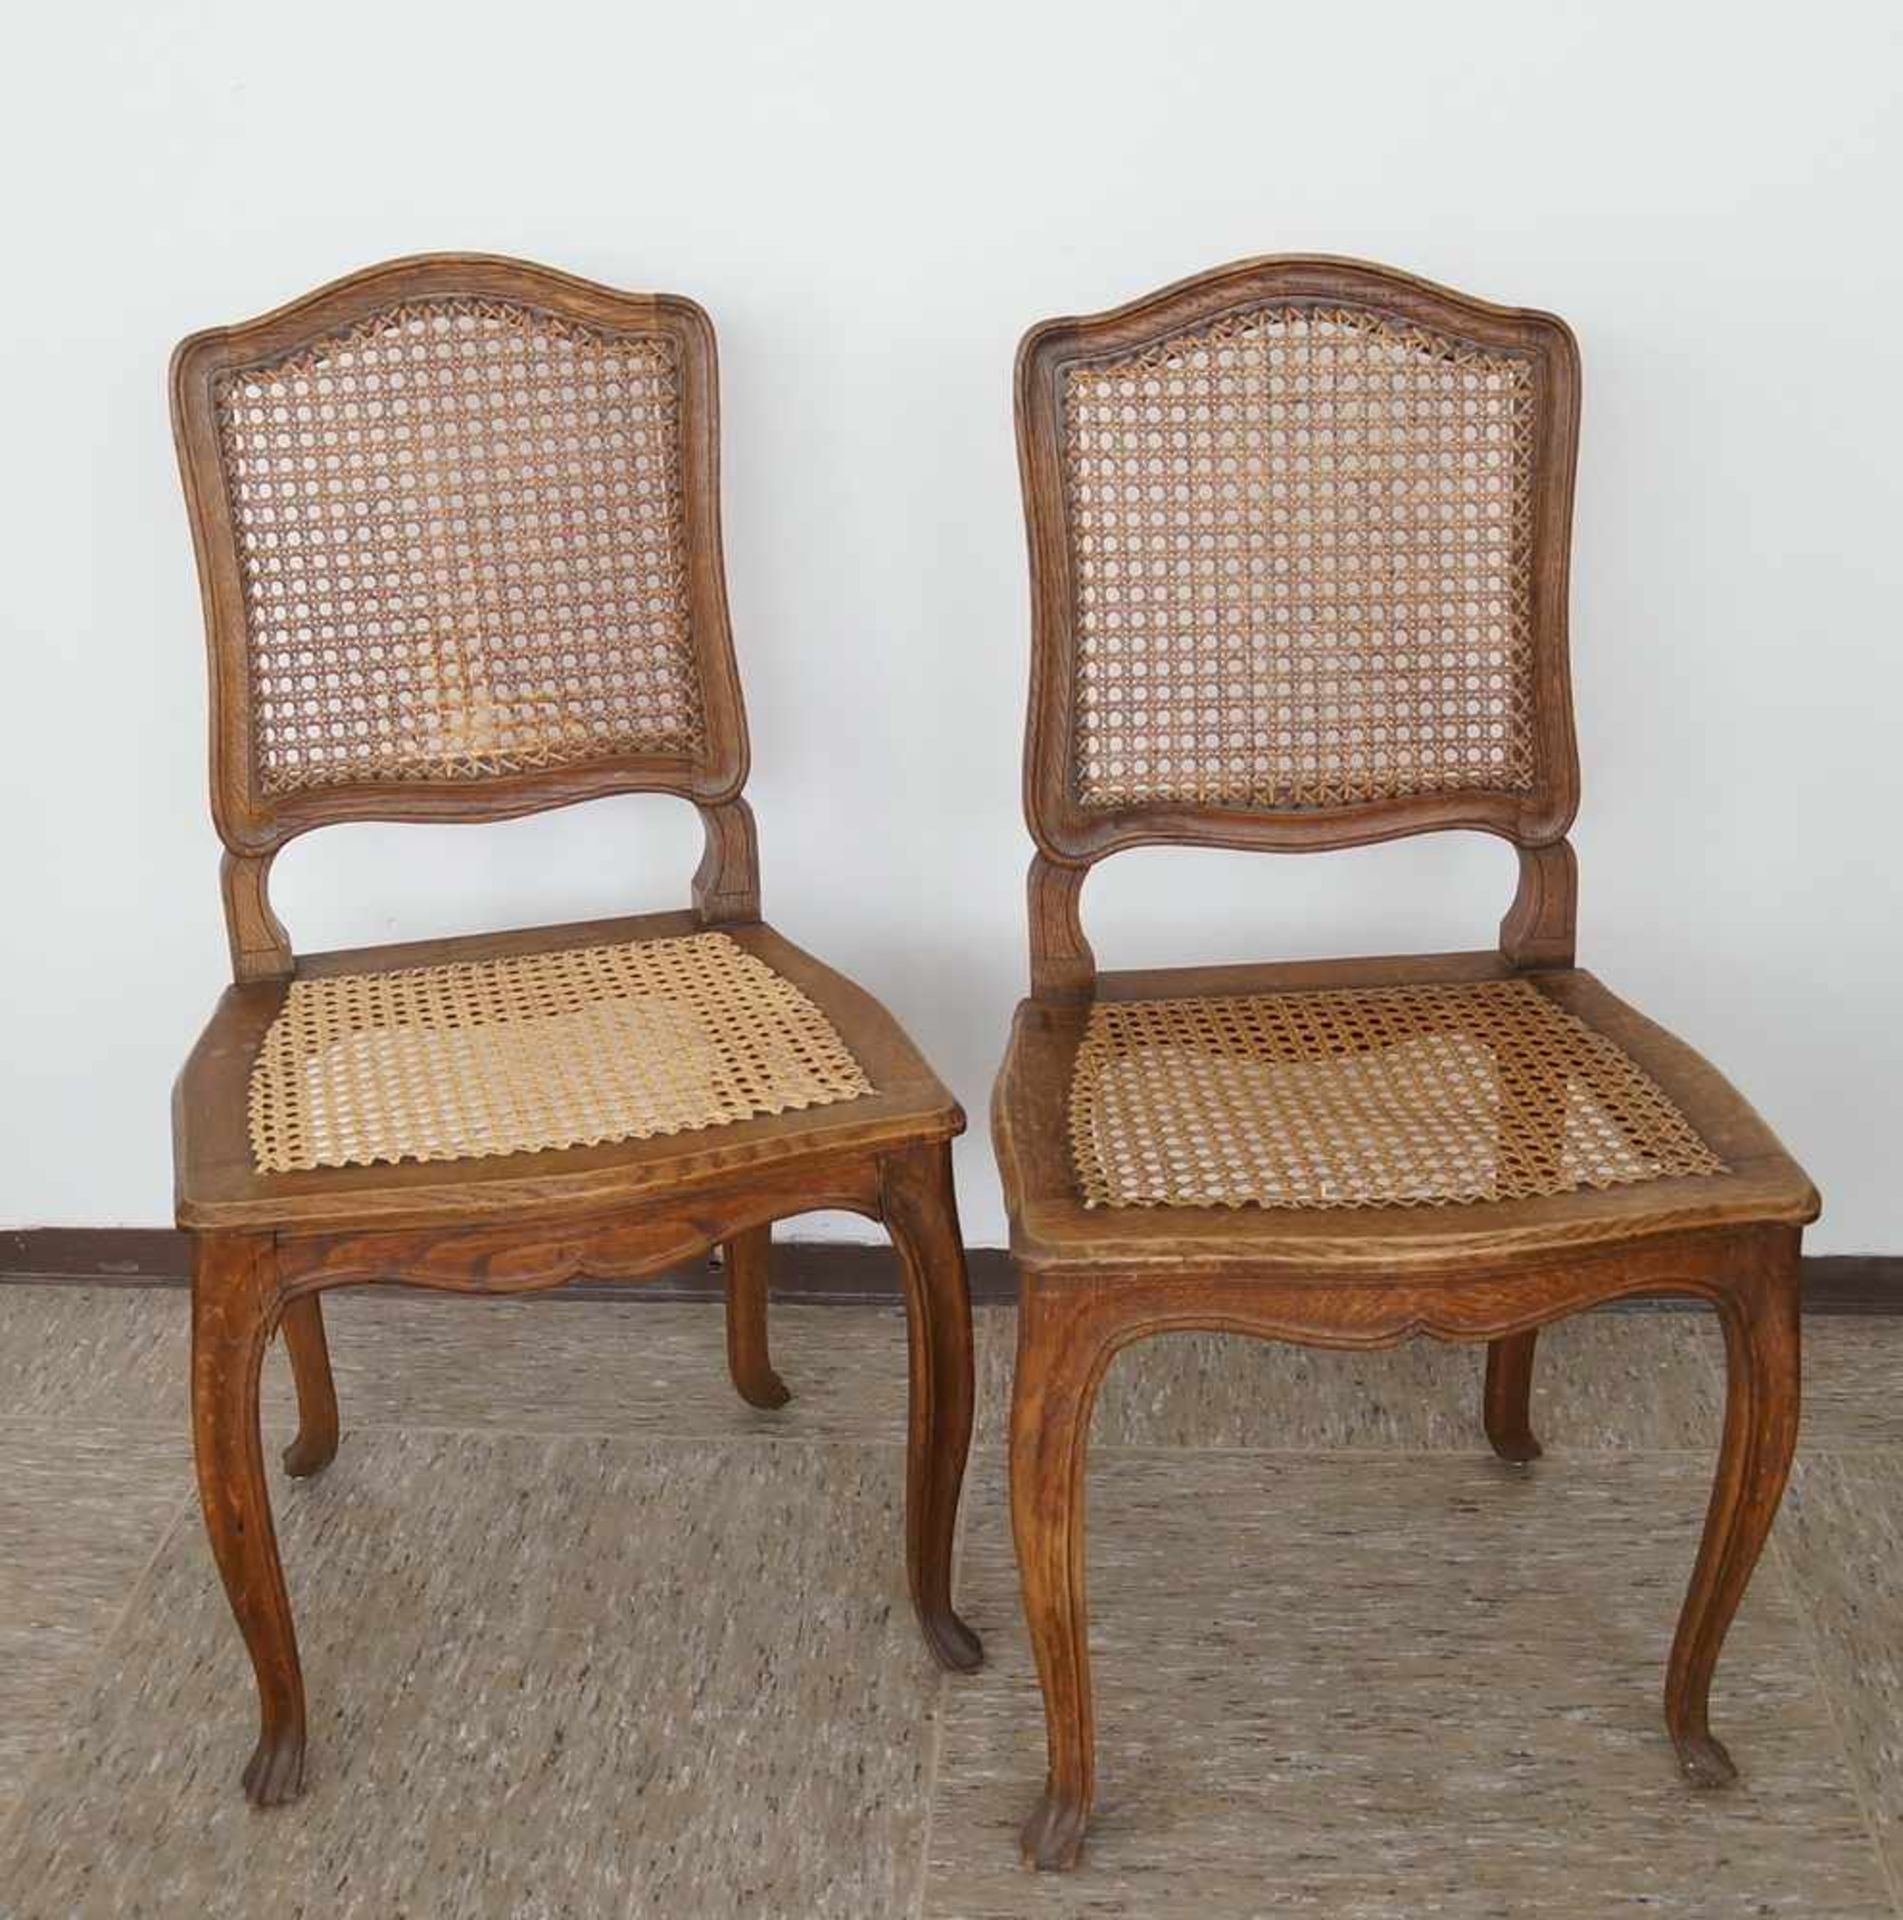 Zwei Spätbarock Stühle mit intaktem Geflecht, 19. JH, rest.-bed., 92x48x42xSH 43 cm- - -24.00 %